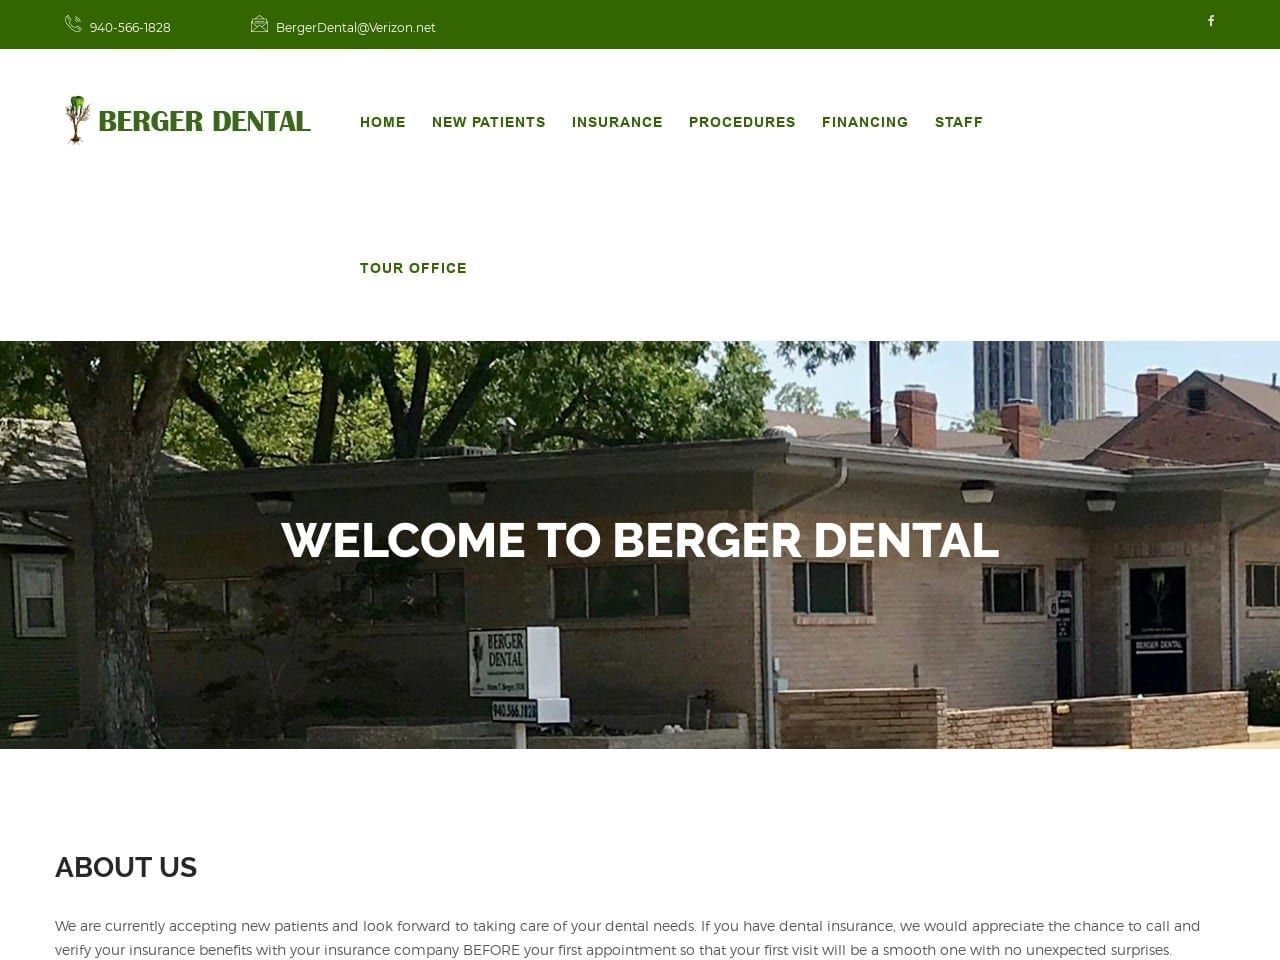 Berger Dental Website Screenshot from bergerdental.com